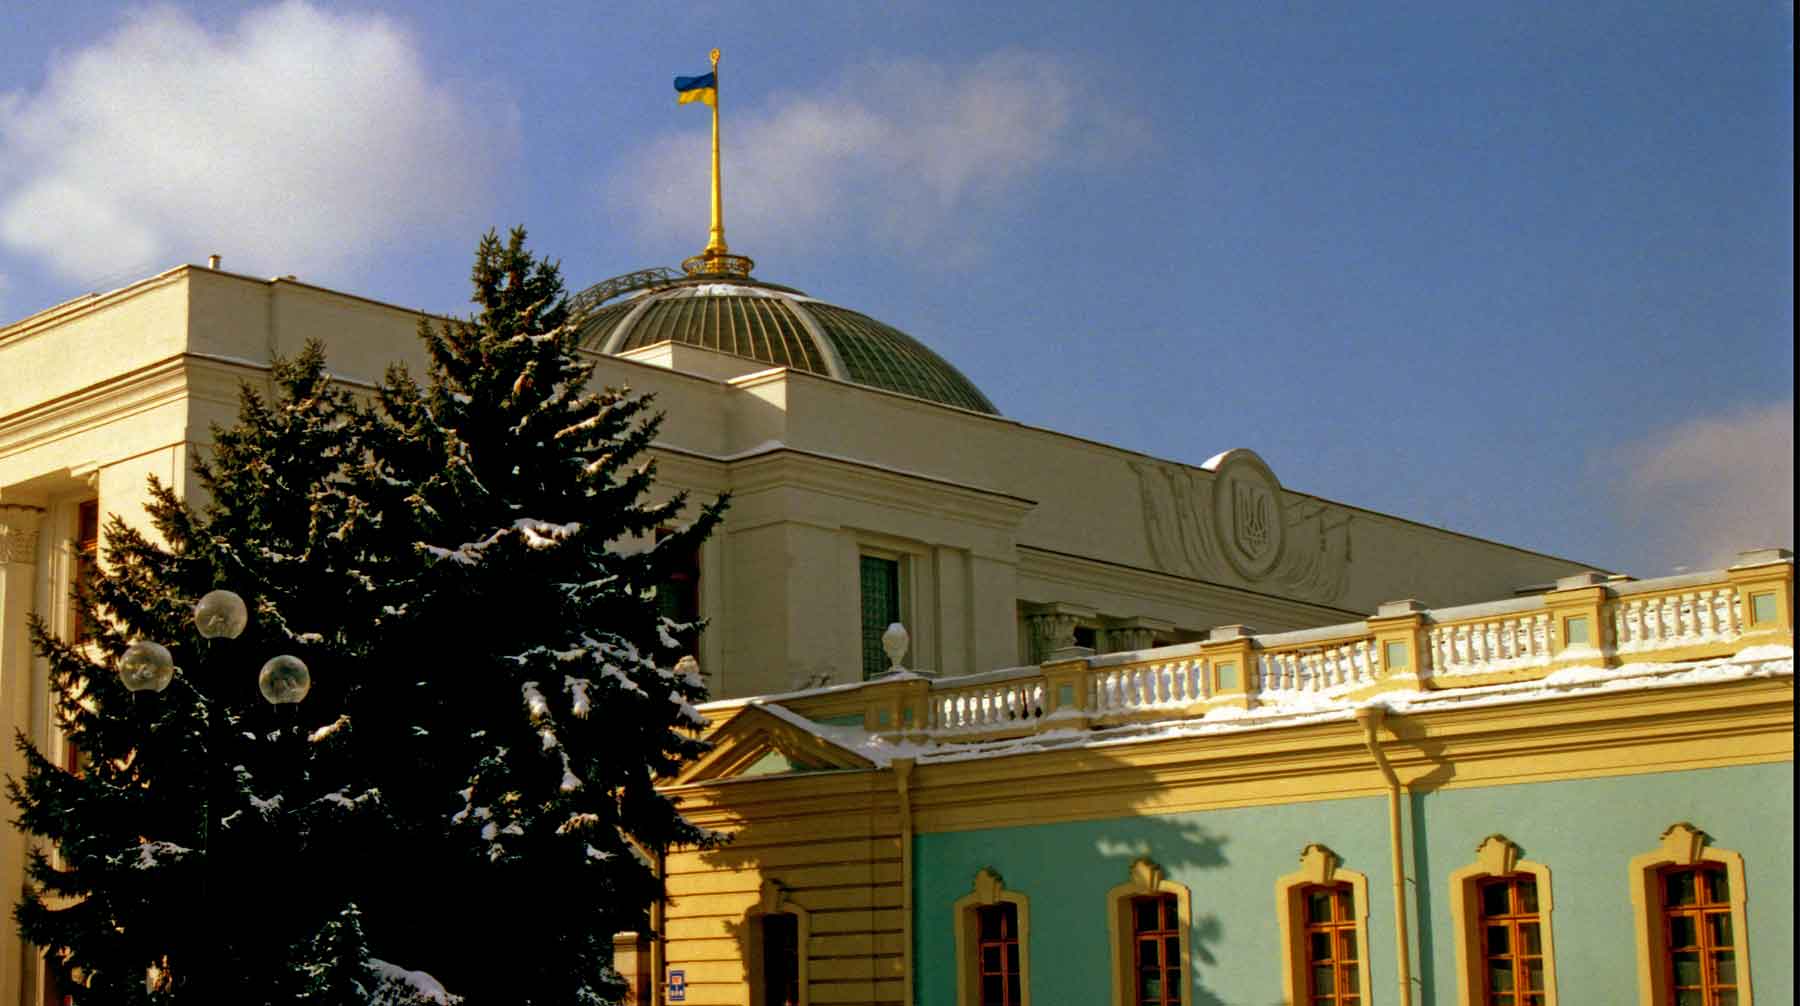 Получивших российский паспорт жителей Донбасса нужно лишить гражданства, заявили в парламенте Верховная Рада